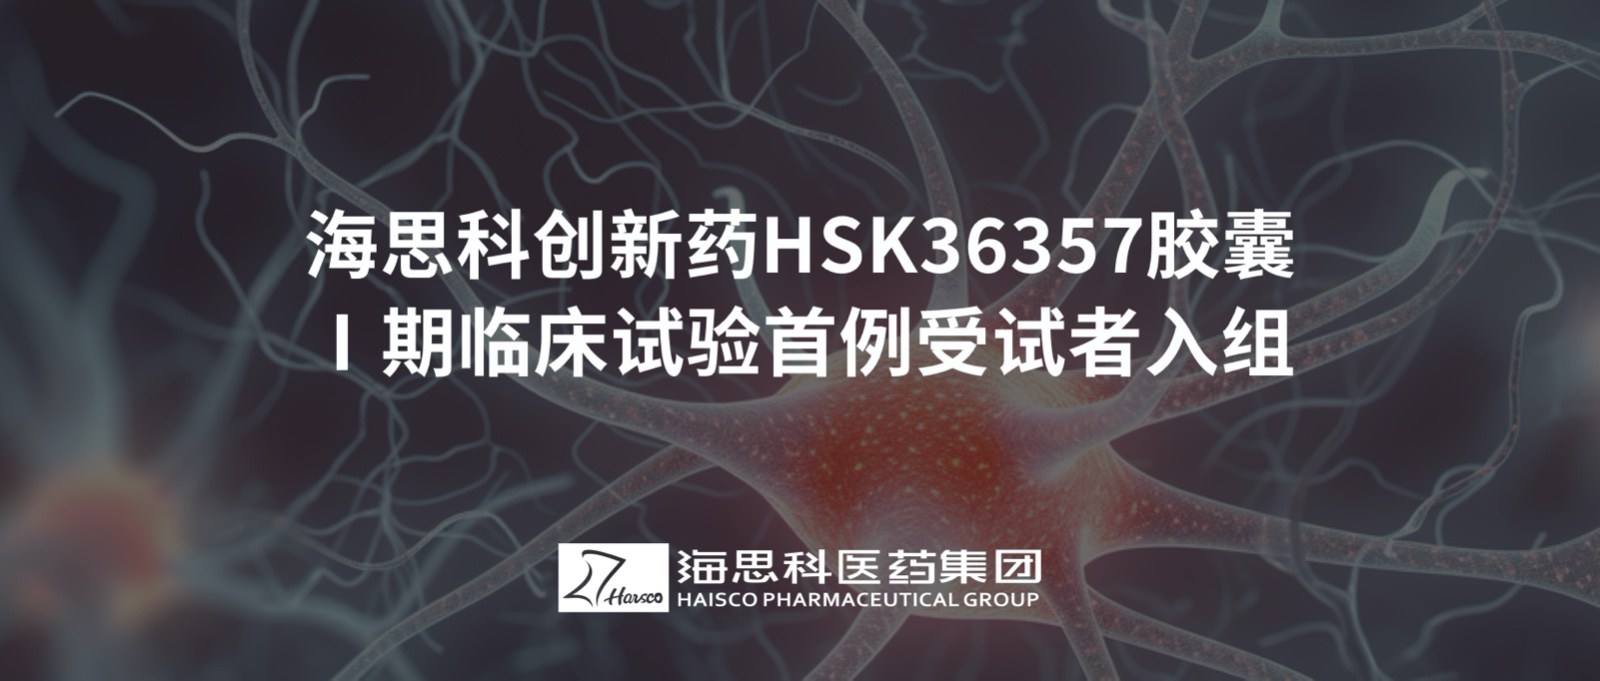 8797威尼斯老品牌创新药HSK36357胶囊Ⅰ期临床试验首例受试者入组